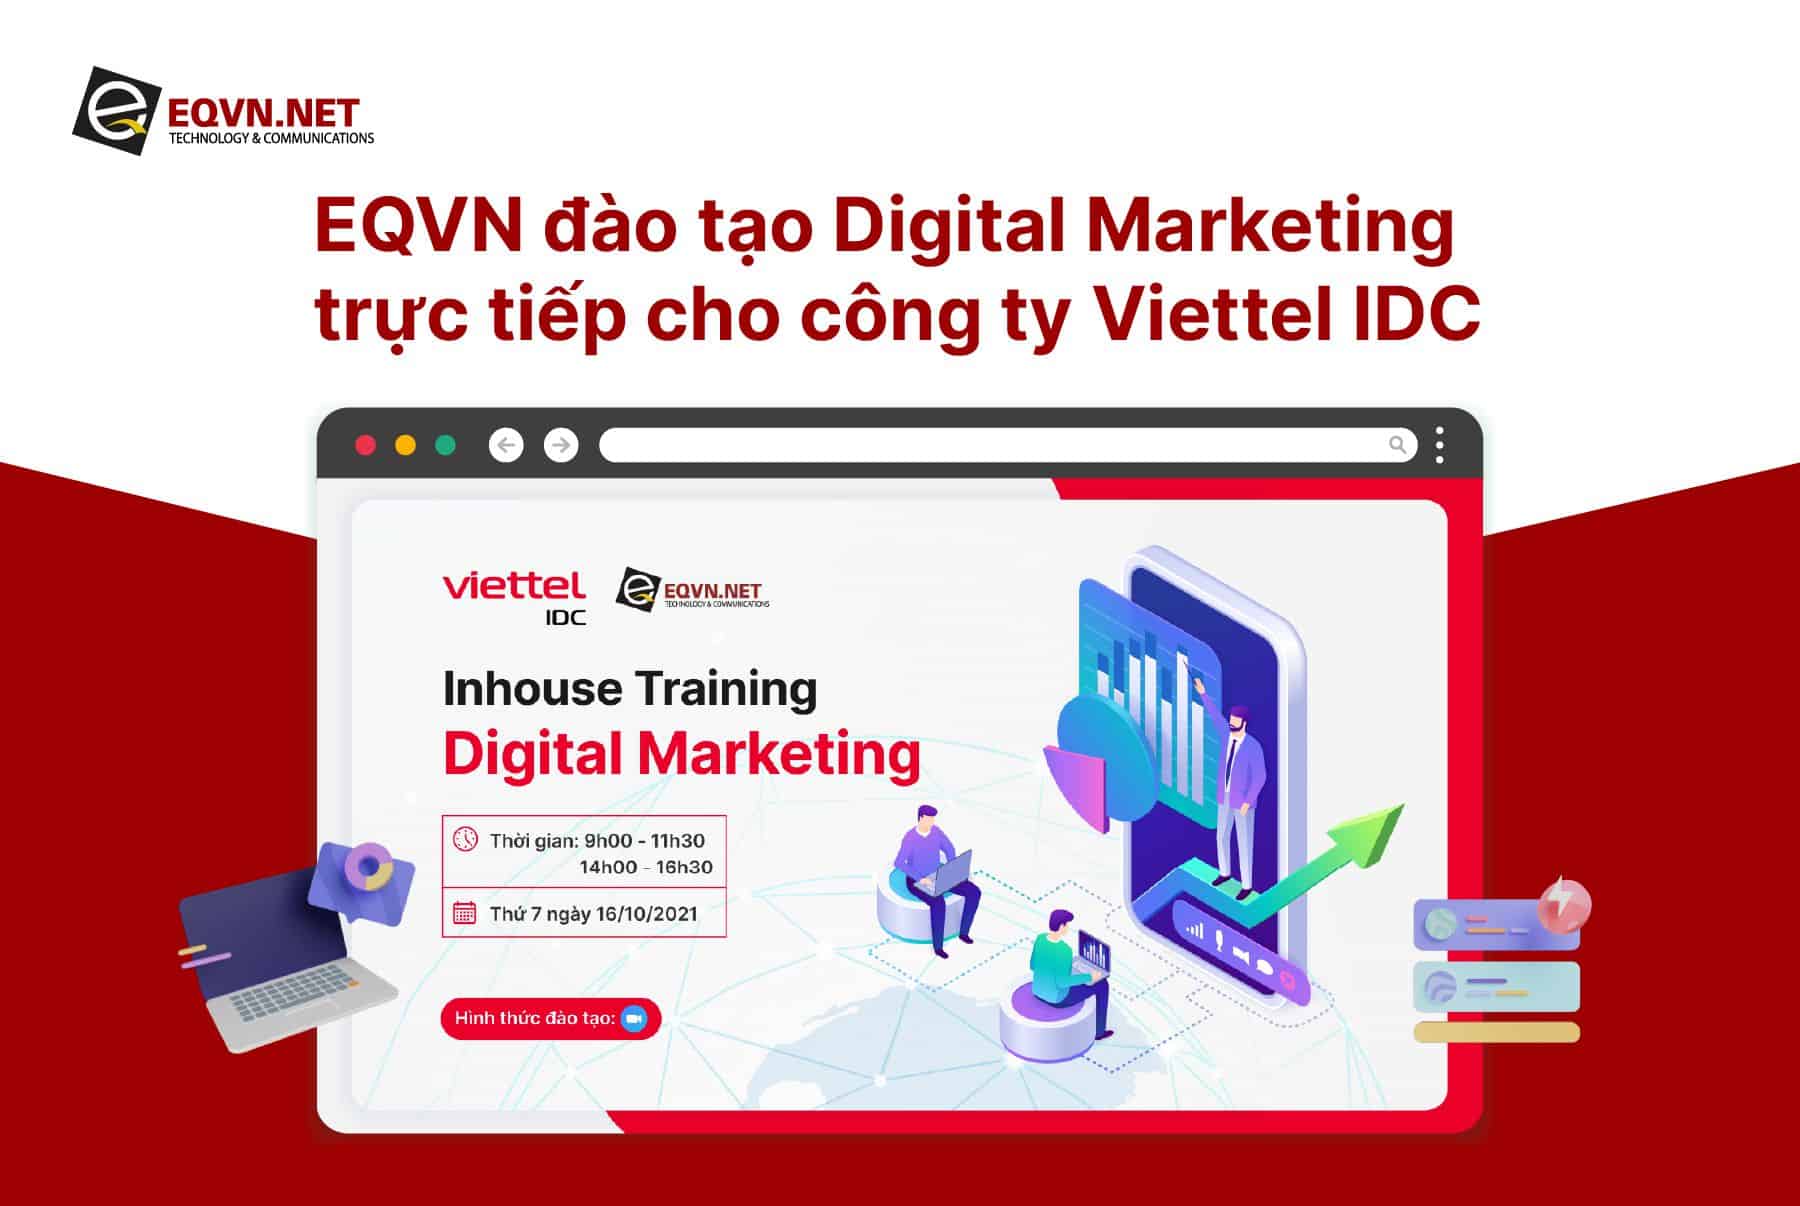 EQVN và Viettel IDC hợp tác đào tạo nội bộ Digital Marketing